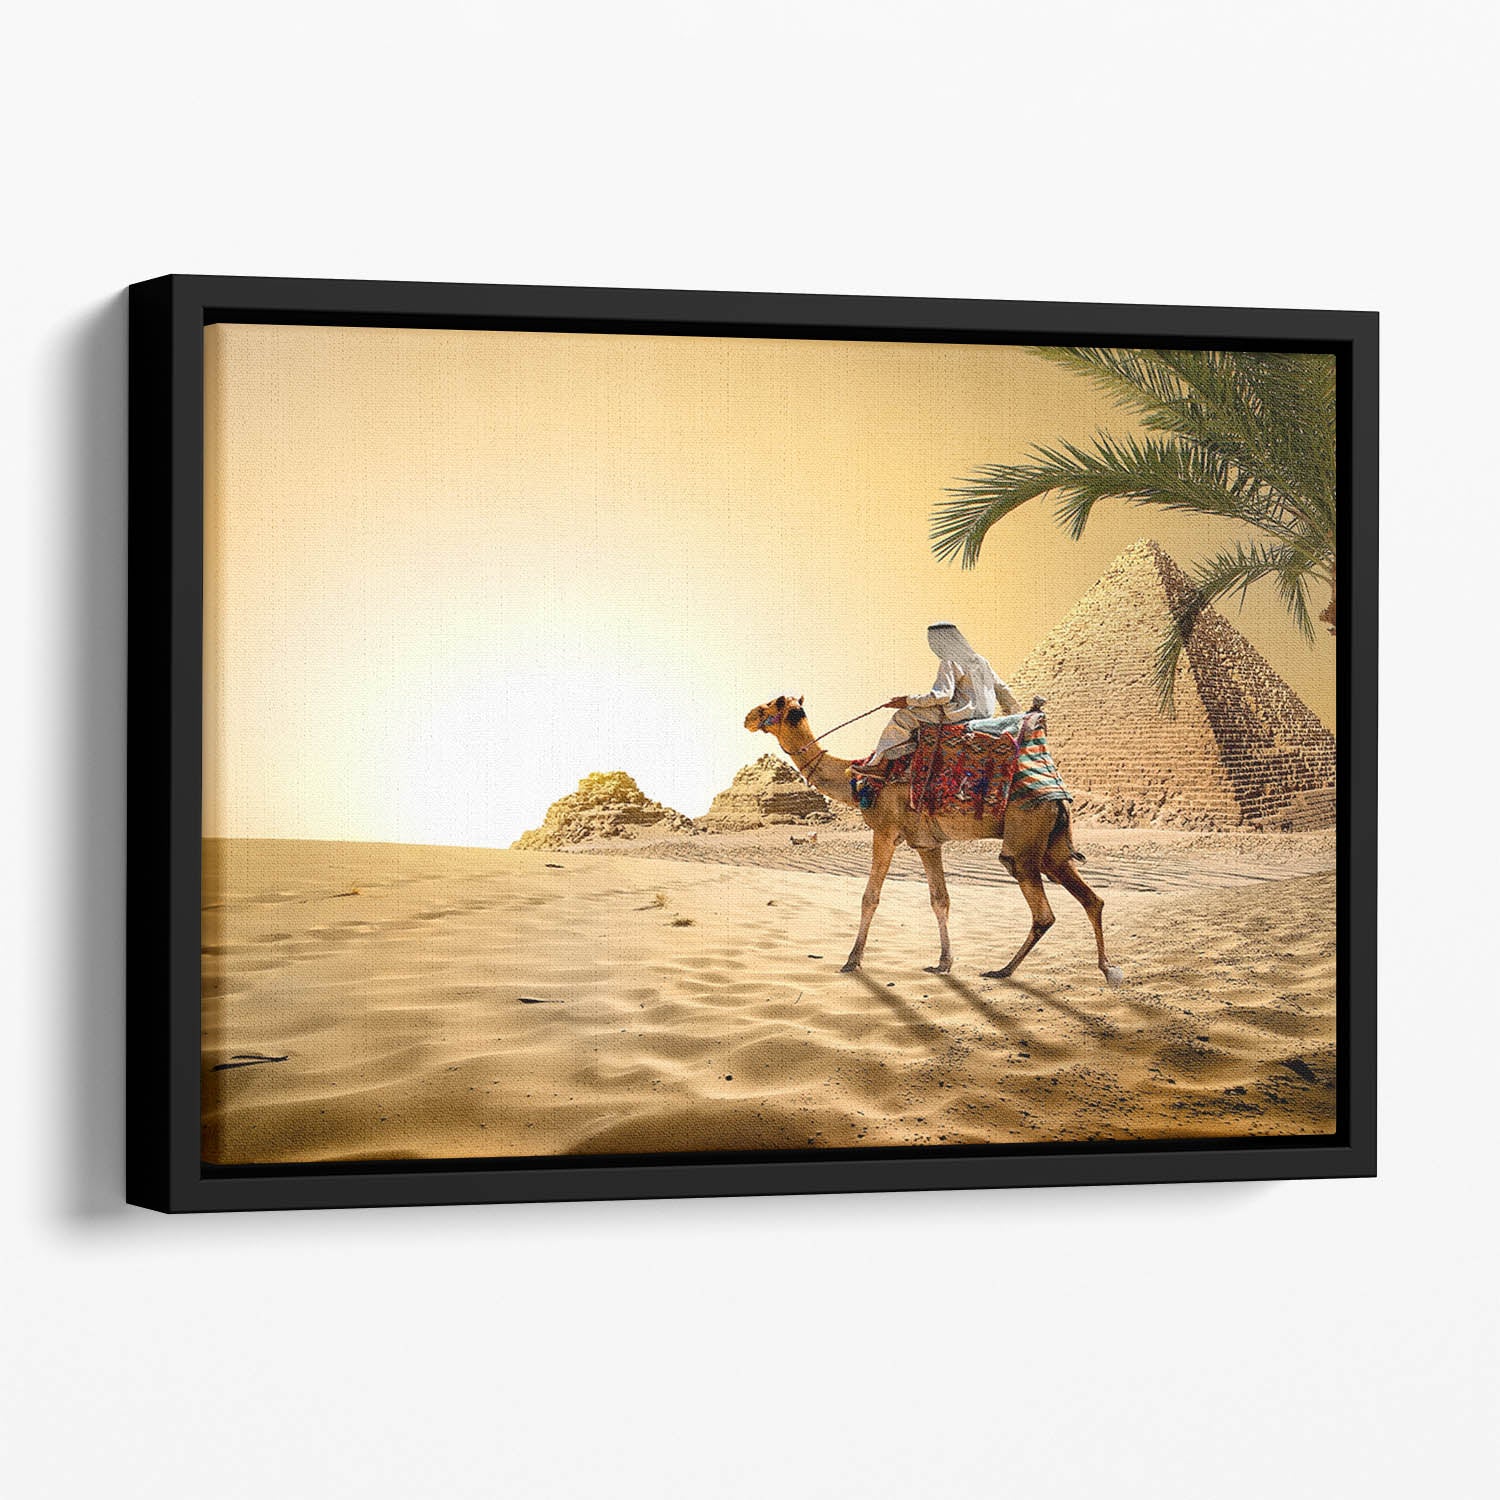 Camel near pyramids desert of Egypt Floating Framed Canvas